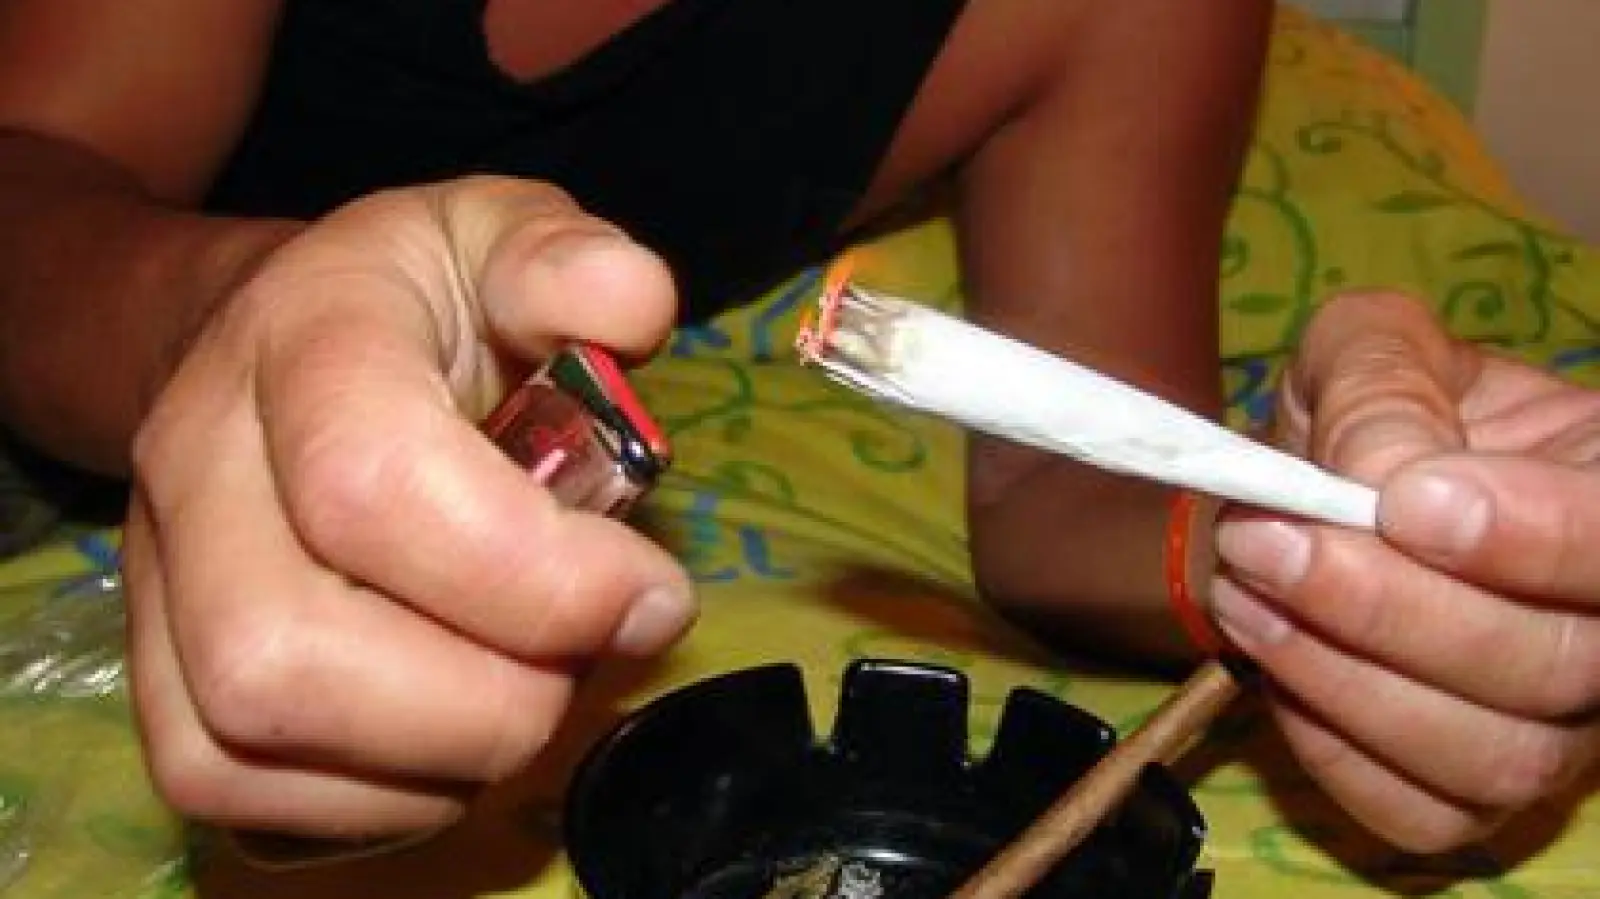 Konsumiert wird   von jungen Menschen überwiegend Cannabis. Der Konsum von Crystal Meth ist laut Dachauer Drogenberatung in der Region noch gering, aber schon erkennbar.	Foto: Pixabay/13man-eu (Foto: Pixabay/13man-eu)